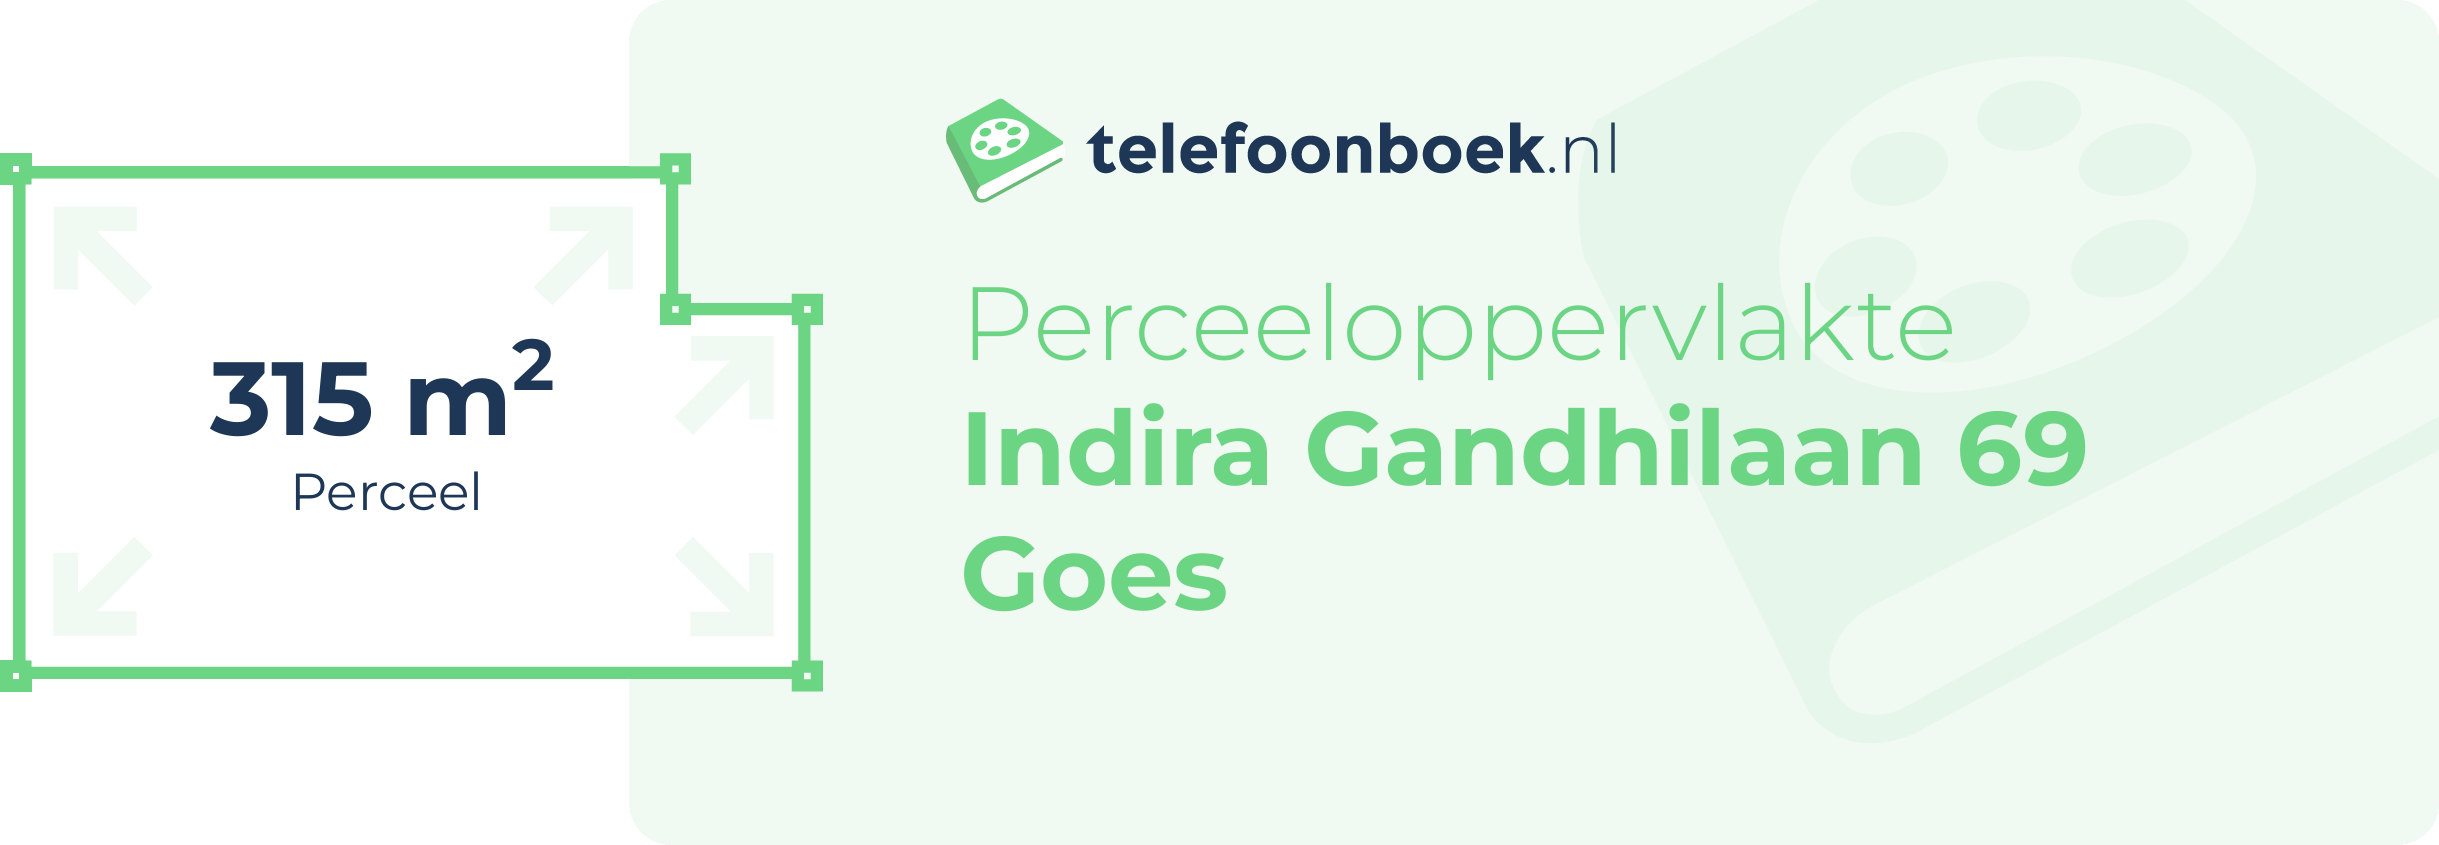 Perceeloppervlakte Indira Gandhilaan 69 Goes